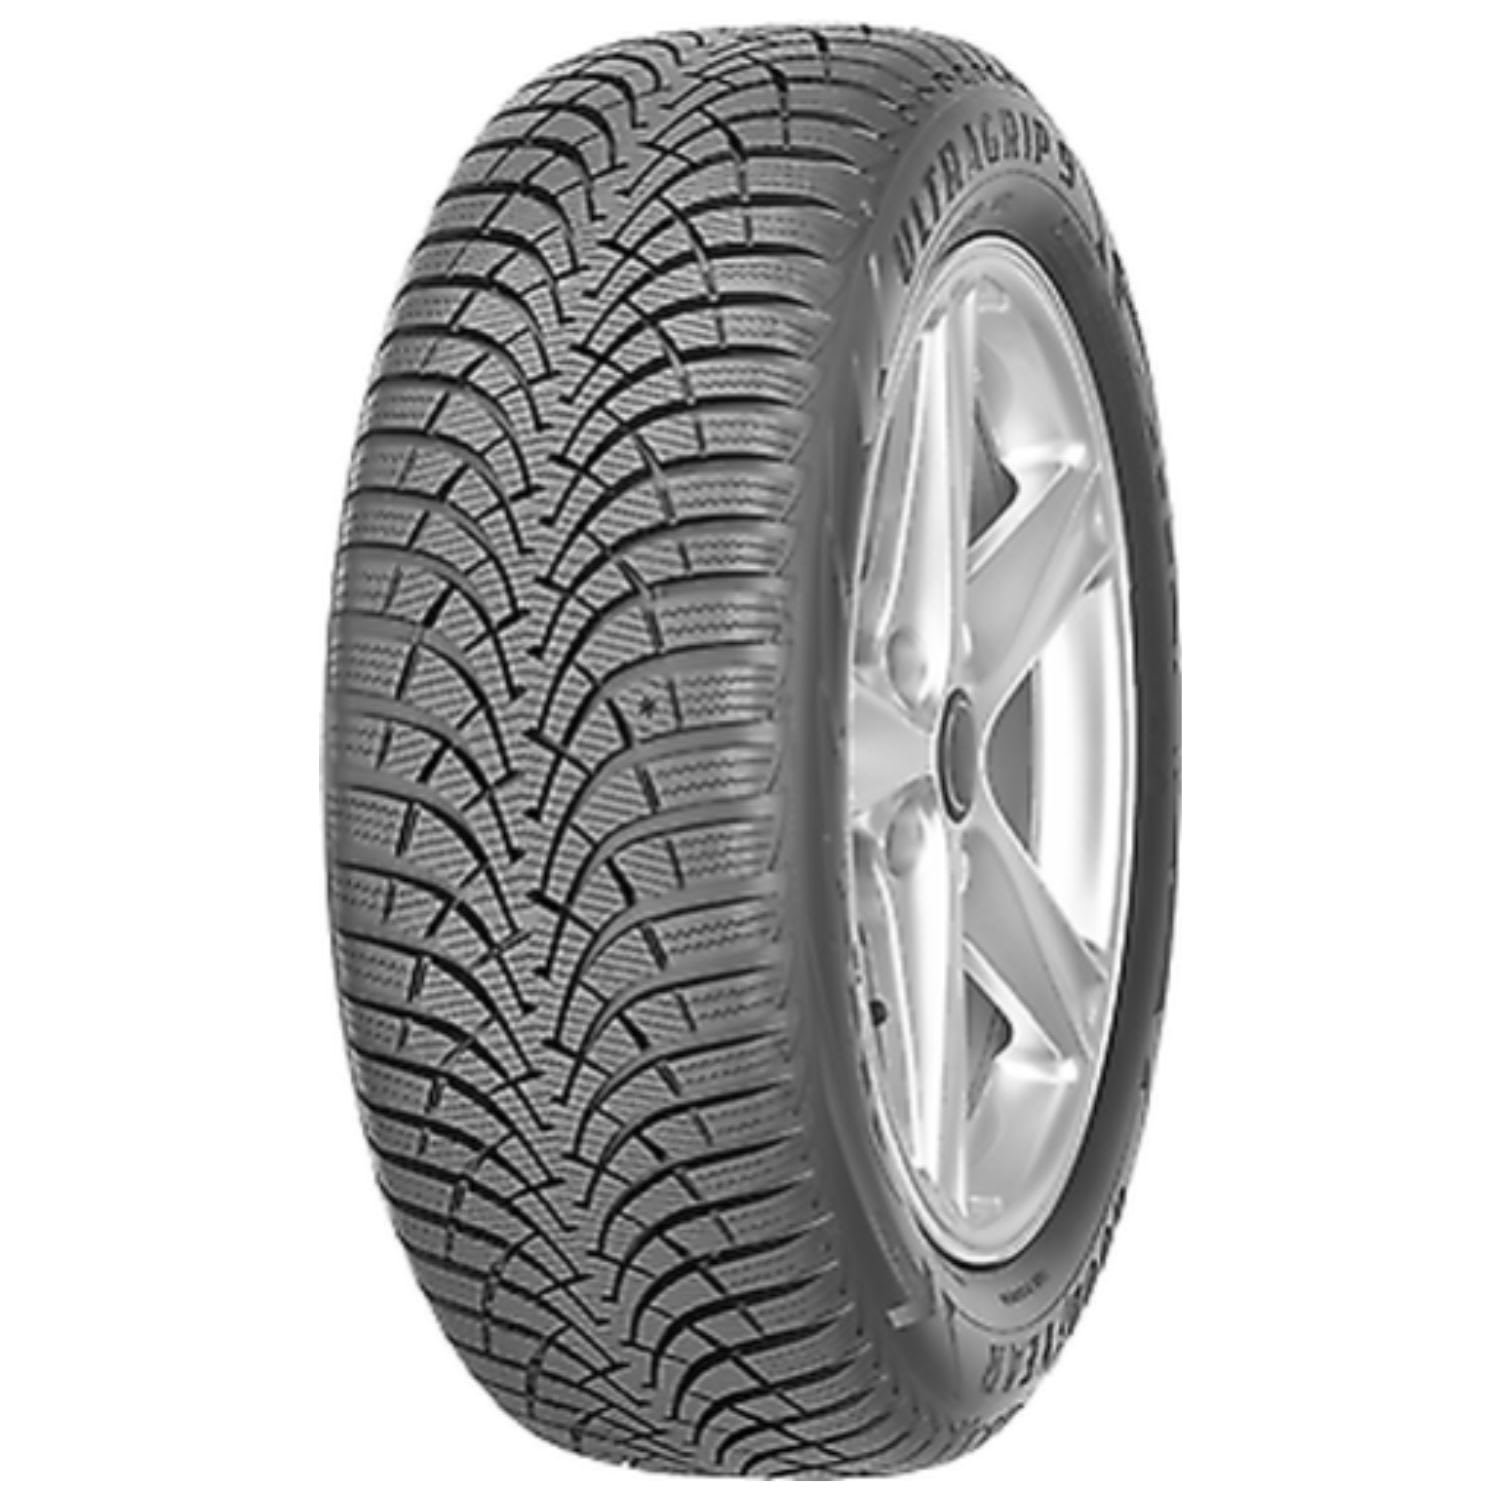 | SimpleTire Tires Online 9 Grip Plus Buy Goodyear Ultra